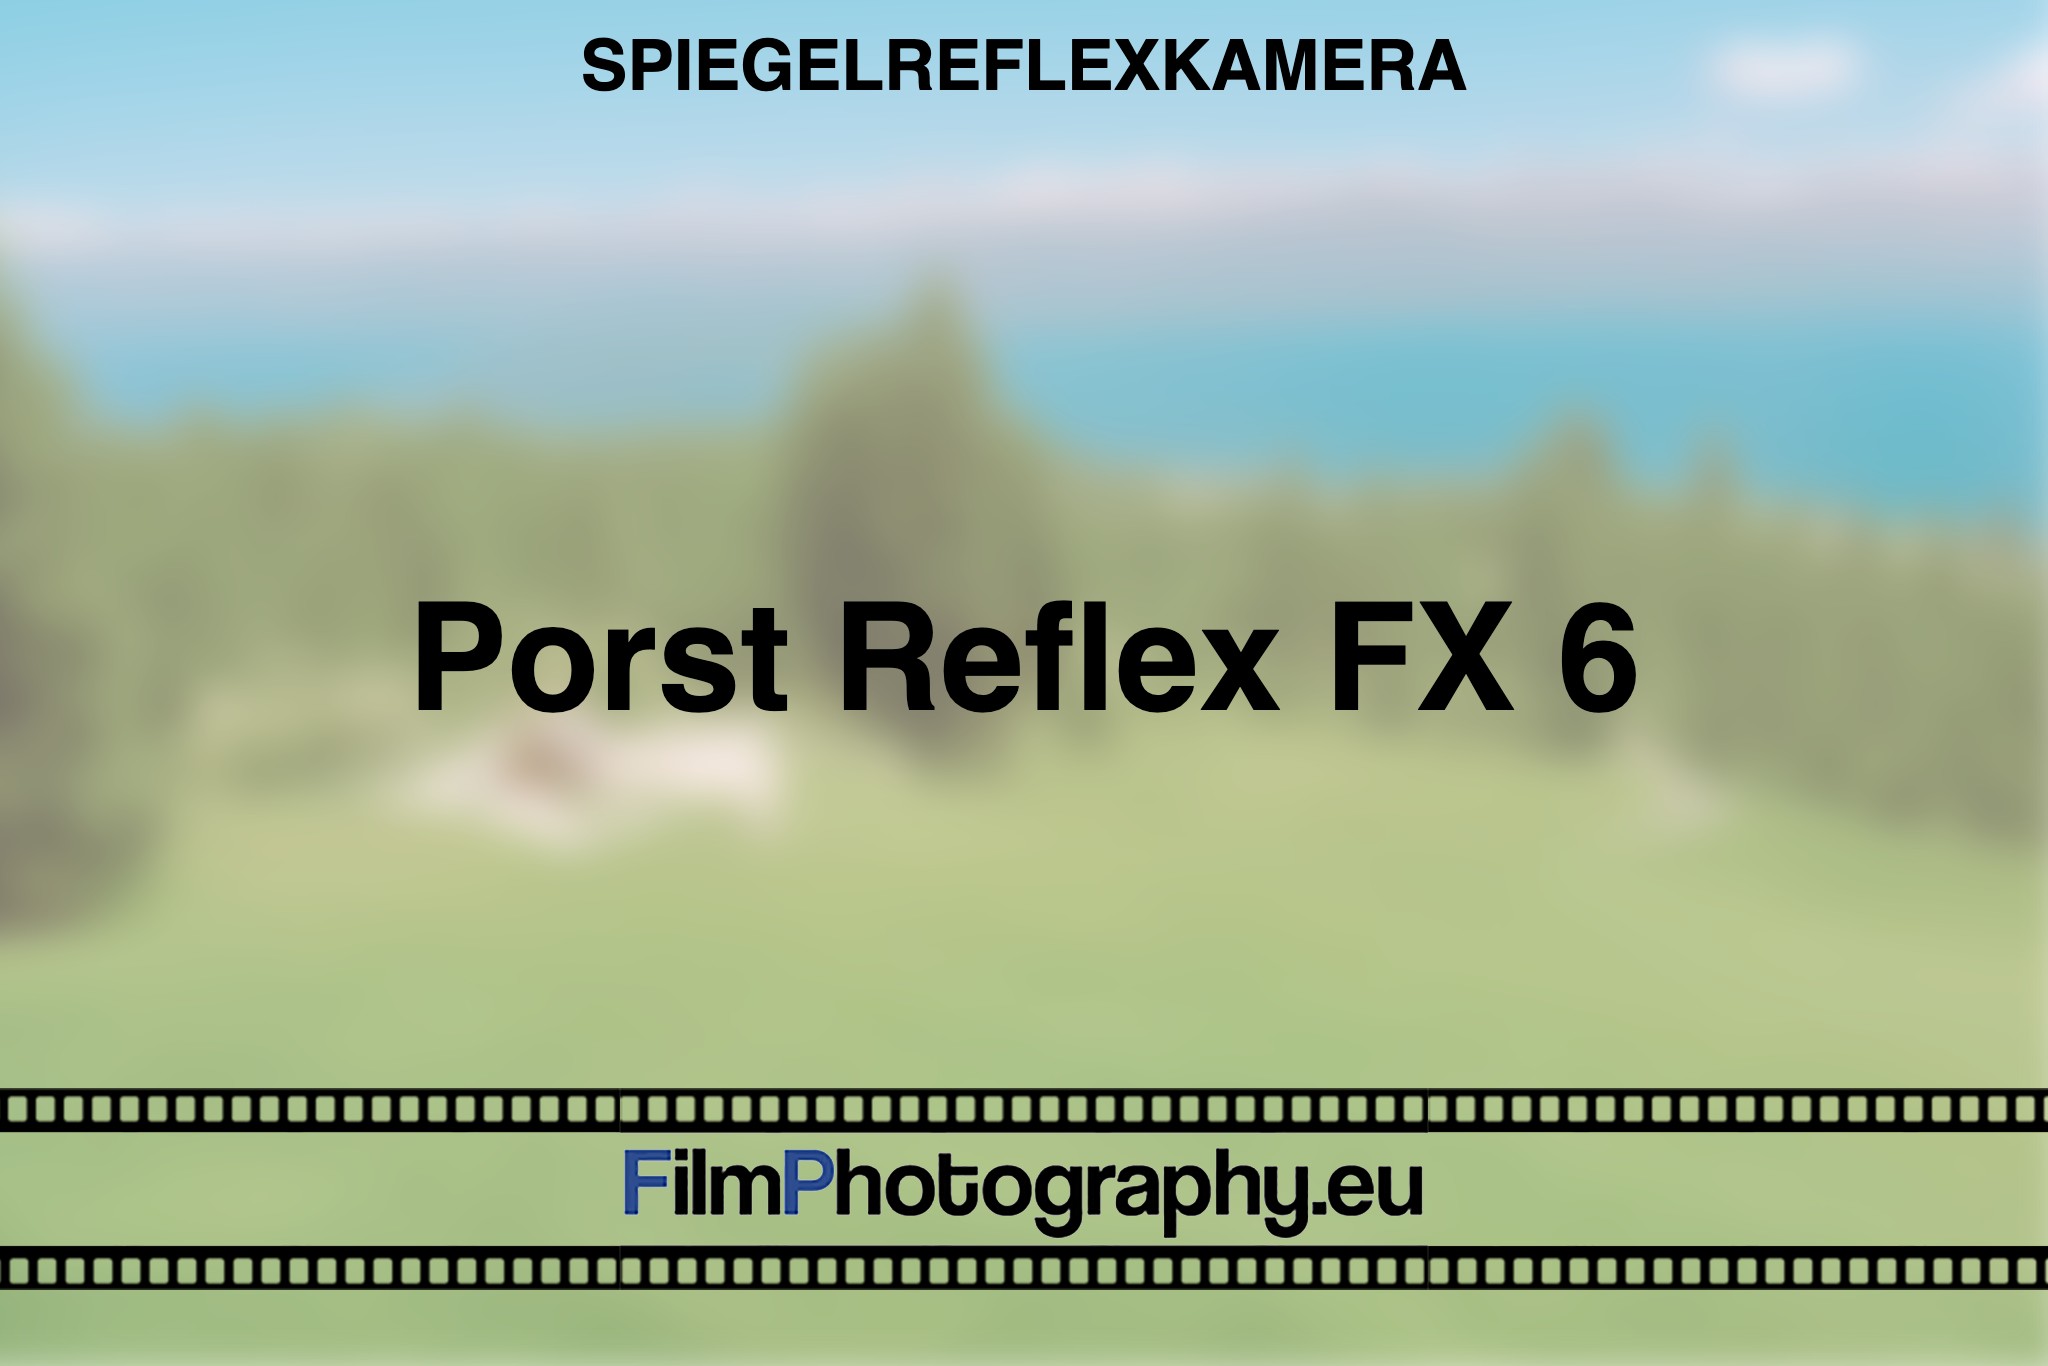 porst-reflex-fx-6-spiegelreflexkamera-bnv